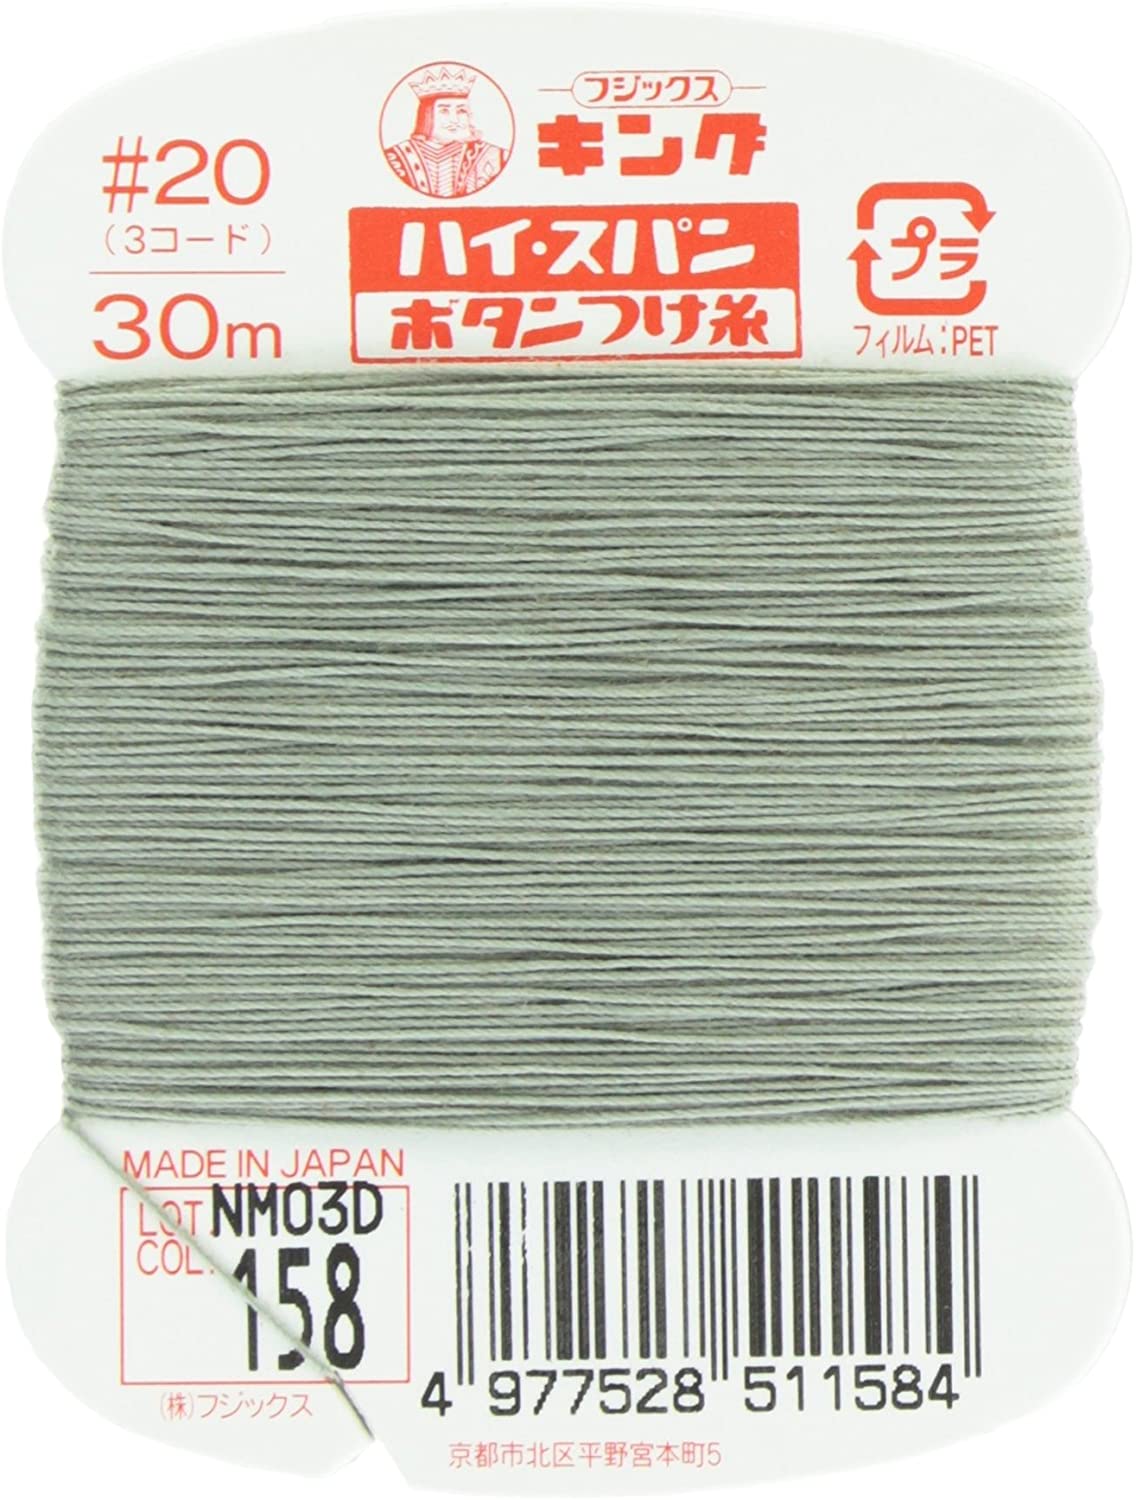 FK51-158 ハイスパンボタンつけ糸 #20 30m巻 (枚)